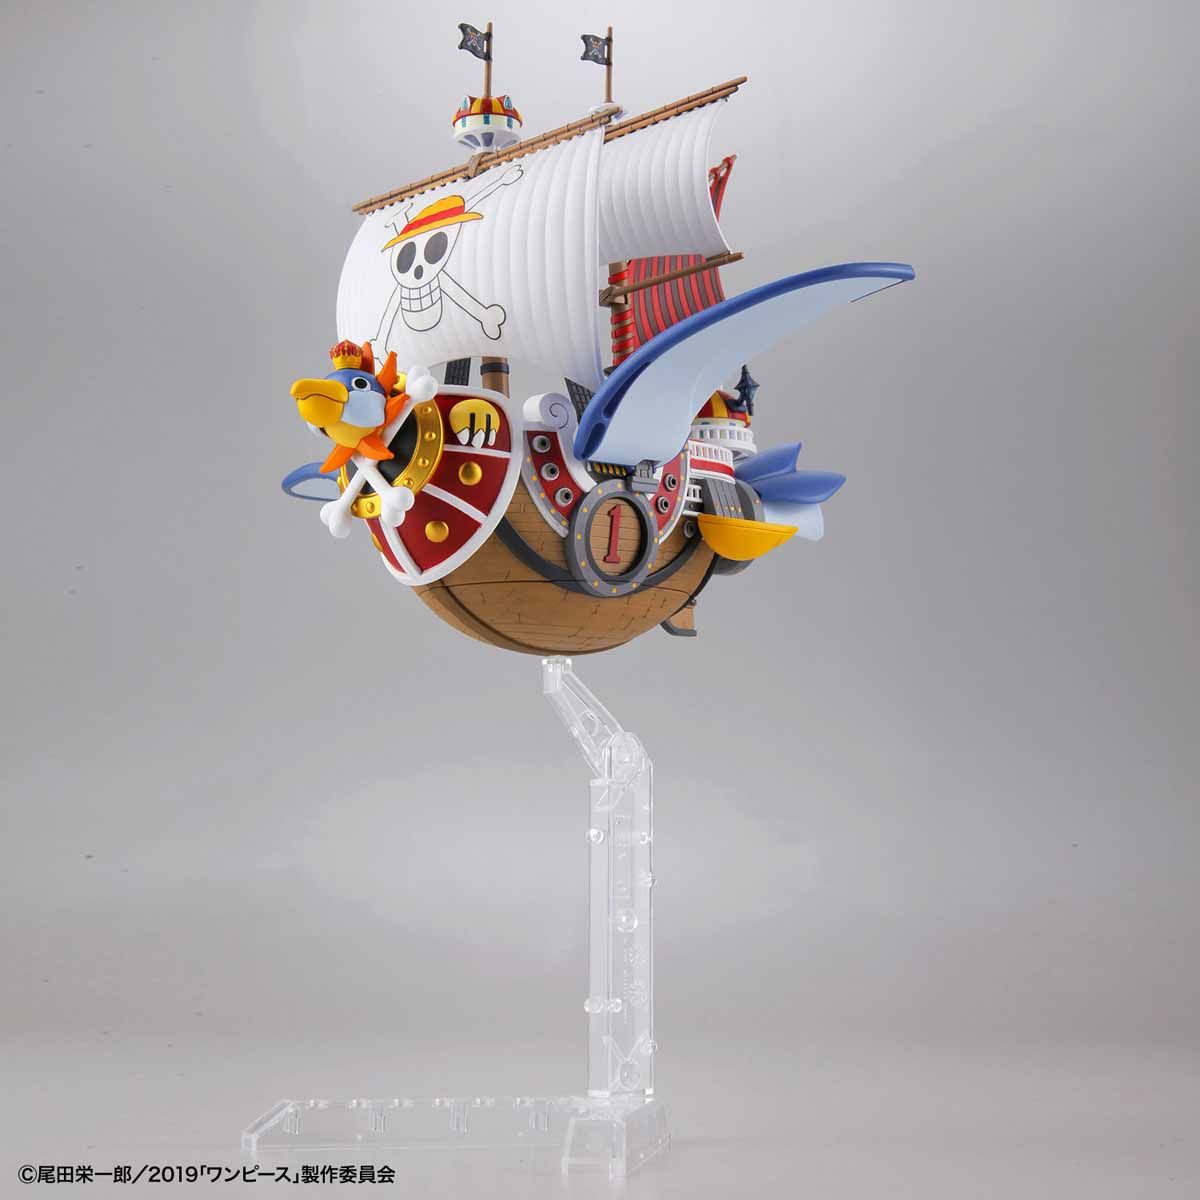 ワンピース偉大なる船(グランドシップ)コレクション サウザンド・サニー号 フライングモデル 06